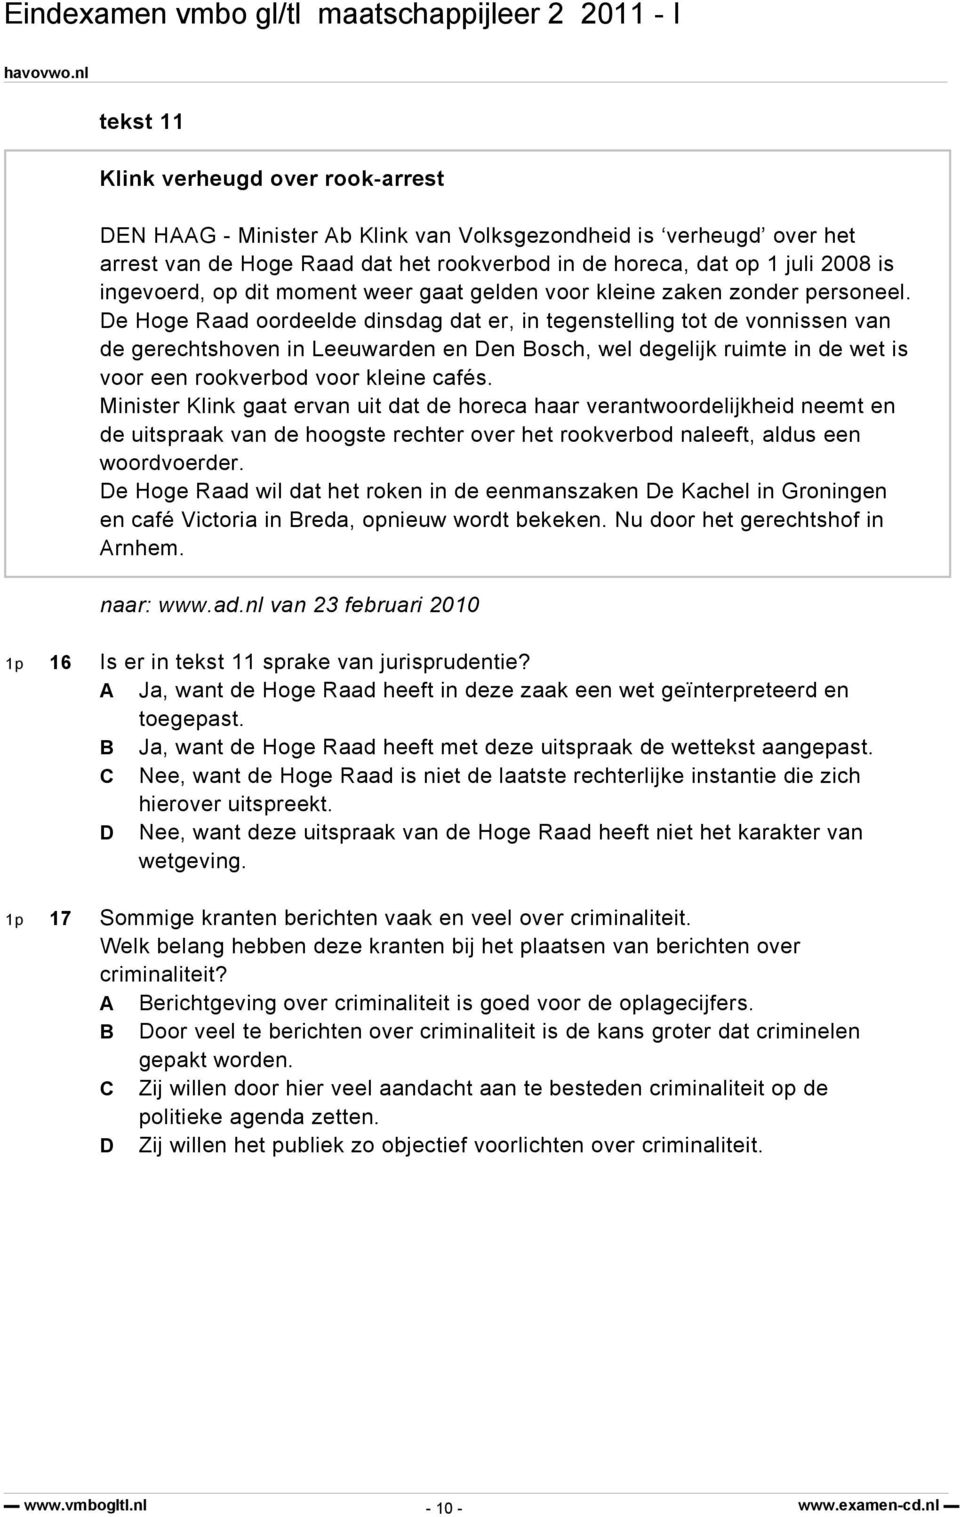 De Hoge Raad oordeelde dinsdag dat er, in tegenstelling tot de vonnissen van de gerechtshoven in Leeuwarden en Den Bosch, wel degelijk ruimte in de wet is voor een rookverbod voor kleine cafés.